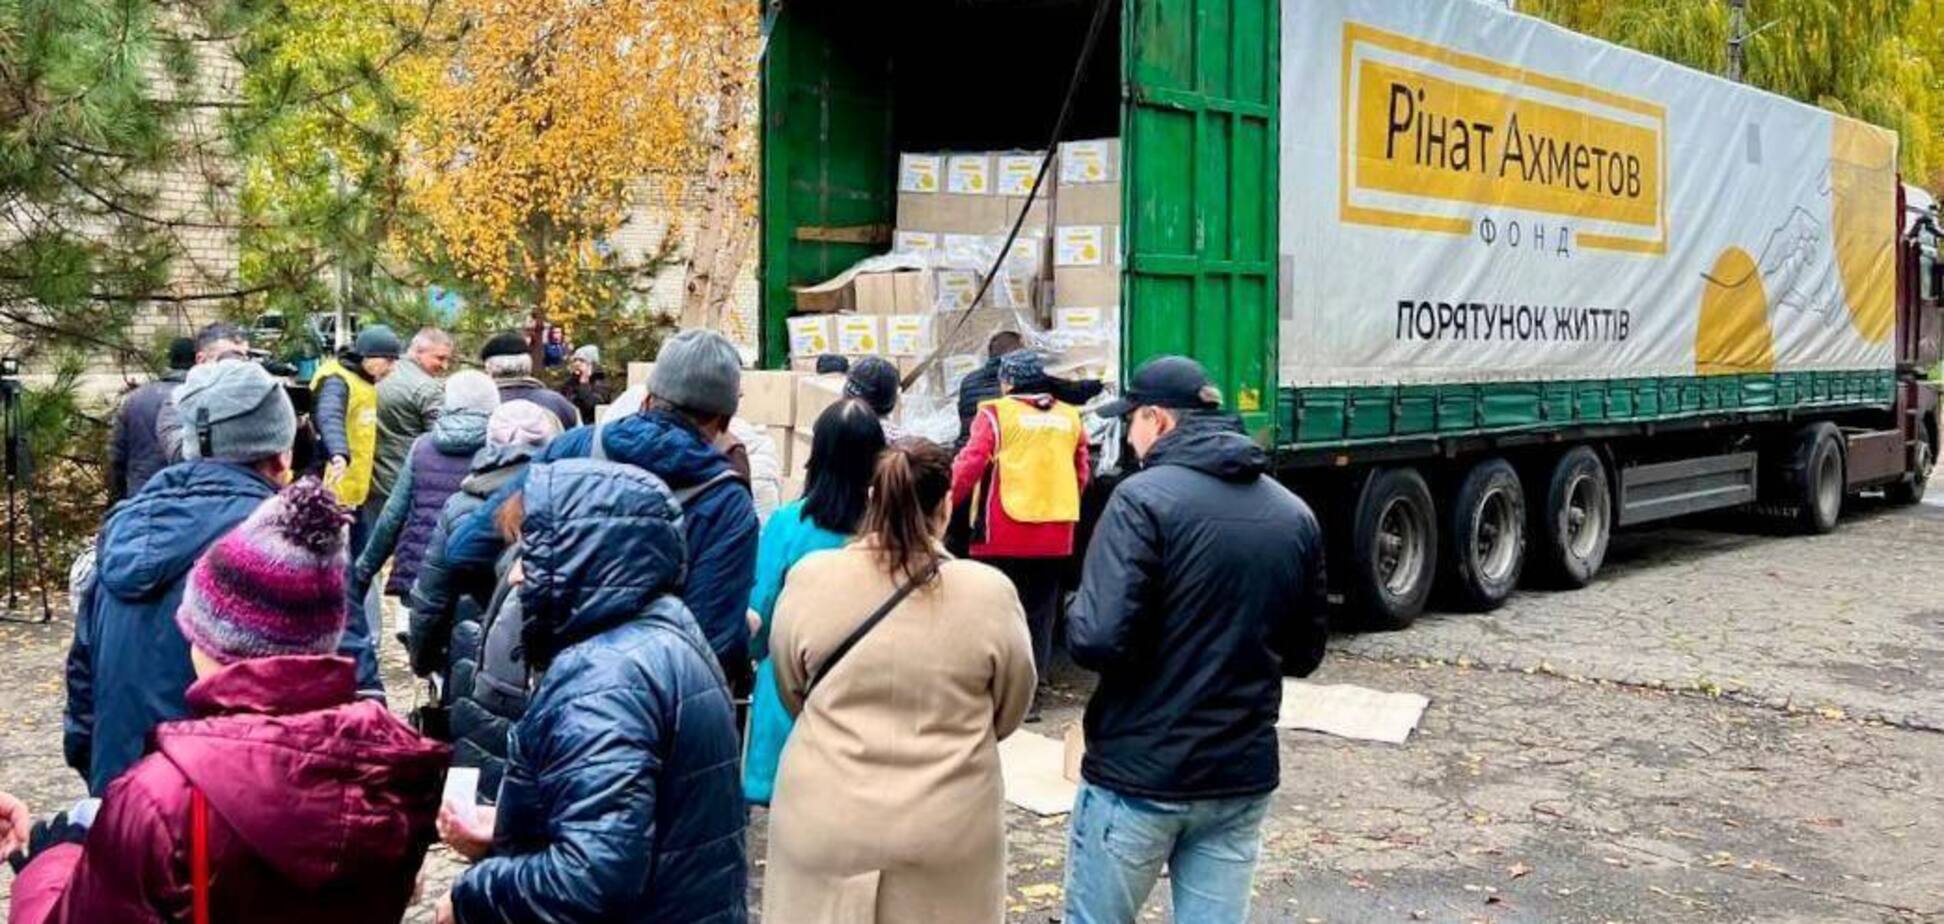 Жители Донбасса получили гуманитарную помощь от Фонда Ахметова